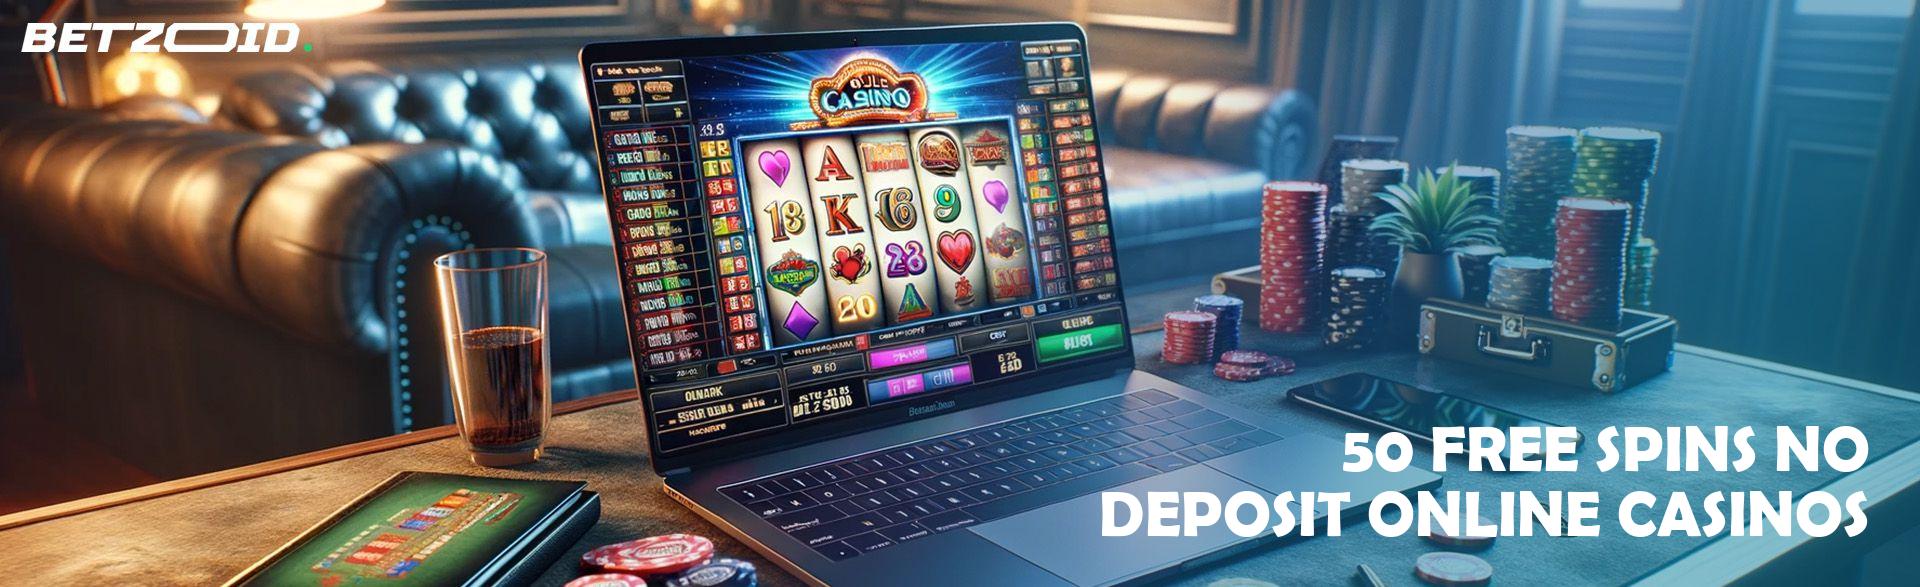 50 Free Spins No Deposit Online Casinos.